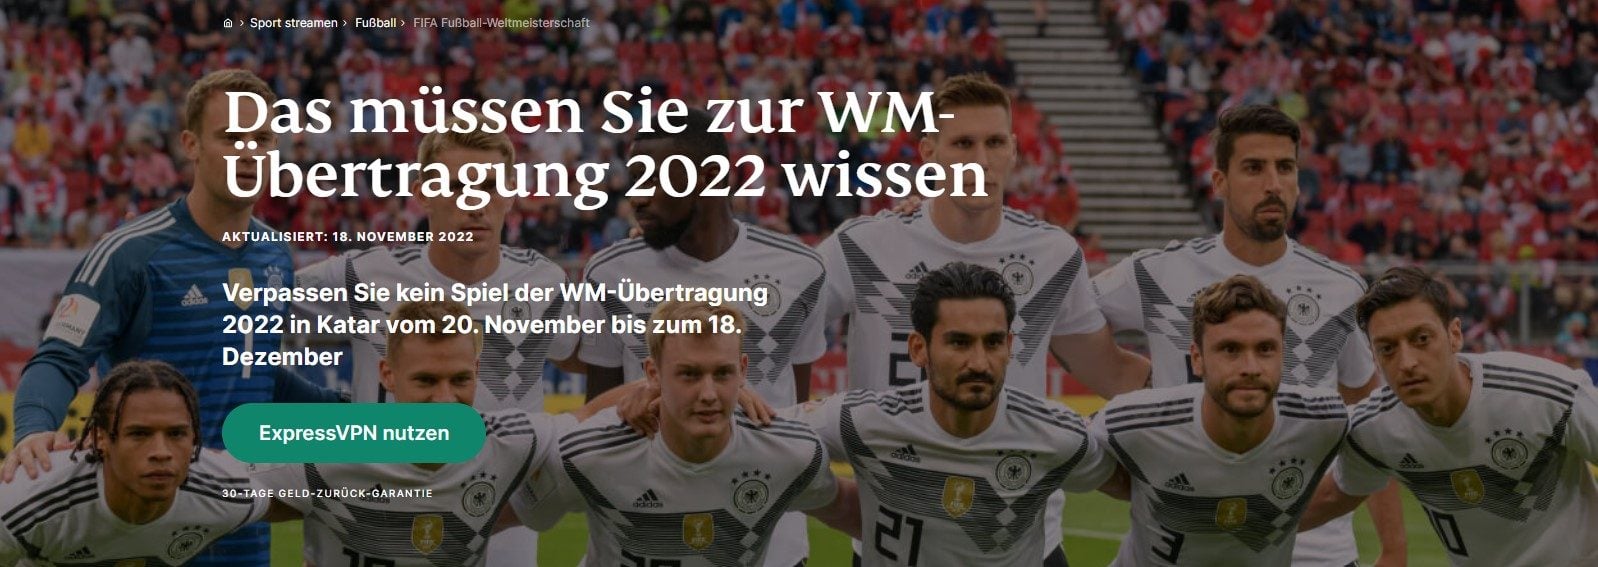 Deutschland-Spanien live im Ausland ansehen WM-Spiele streamen